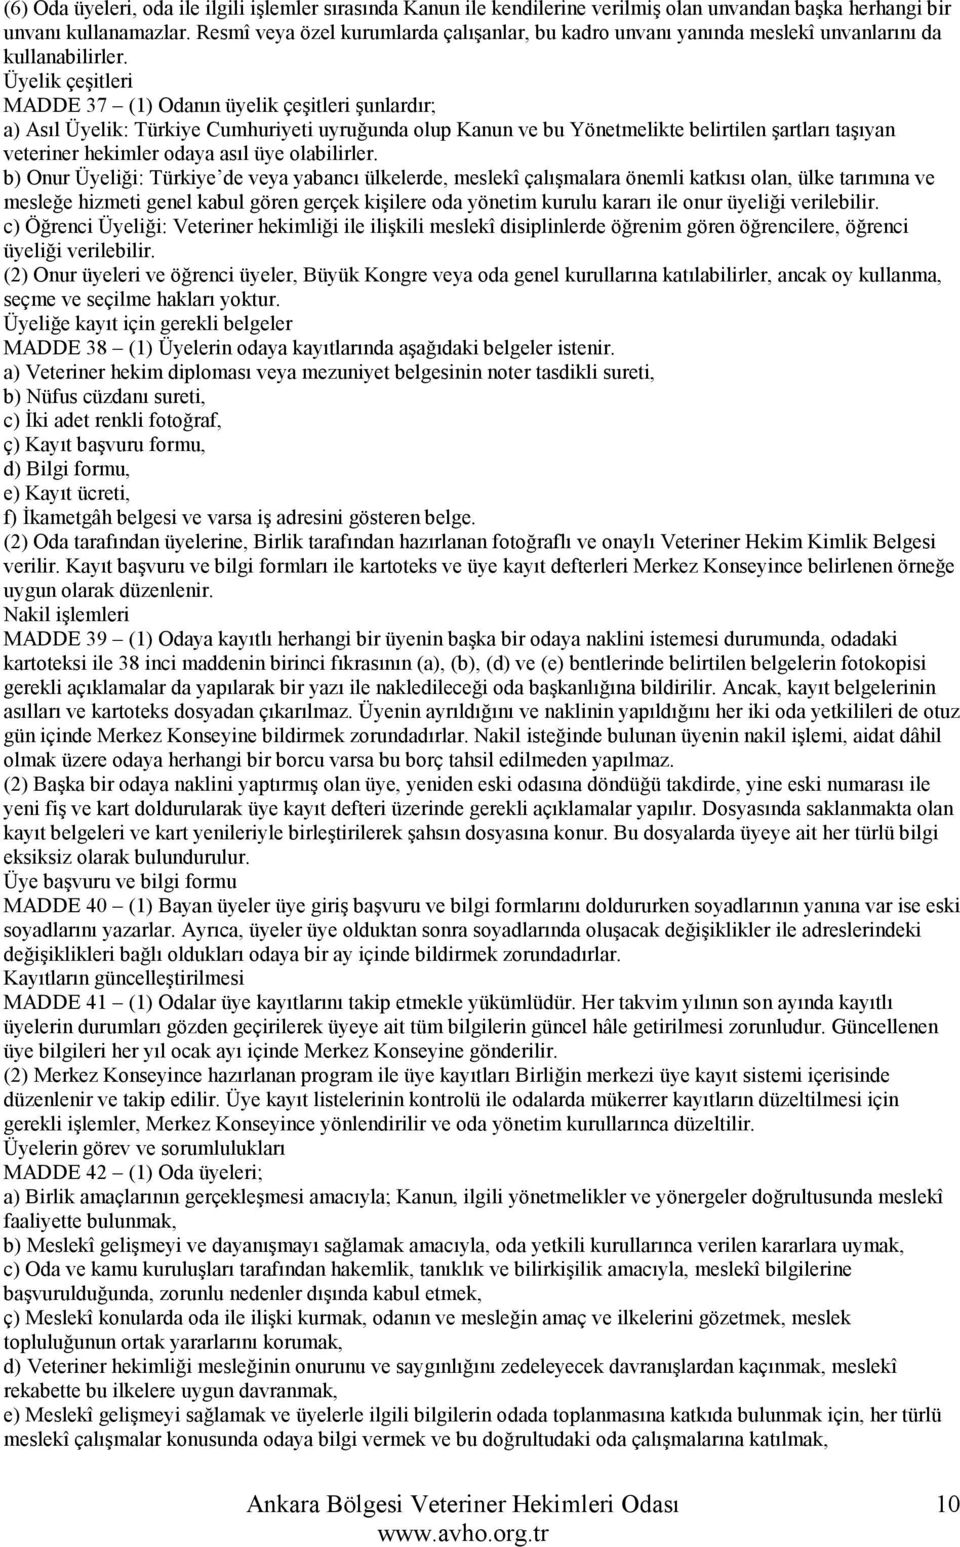 Üyelik çeşitleri MADDE 37 (1) Odanın üyelik çeşitleri şunlardır; a) Asıl Üyelik: Türkiye Cumhuriyeti uyruğunda olup Kanun ve bu Yönetmelikte belirtilen şartları taşıyan veteriner hekimler odaya asıl